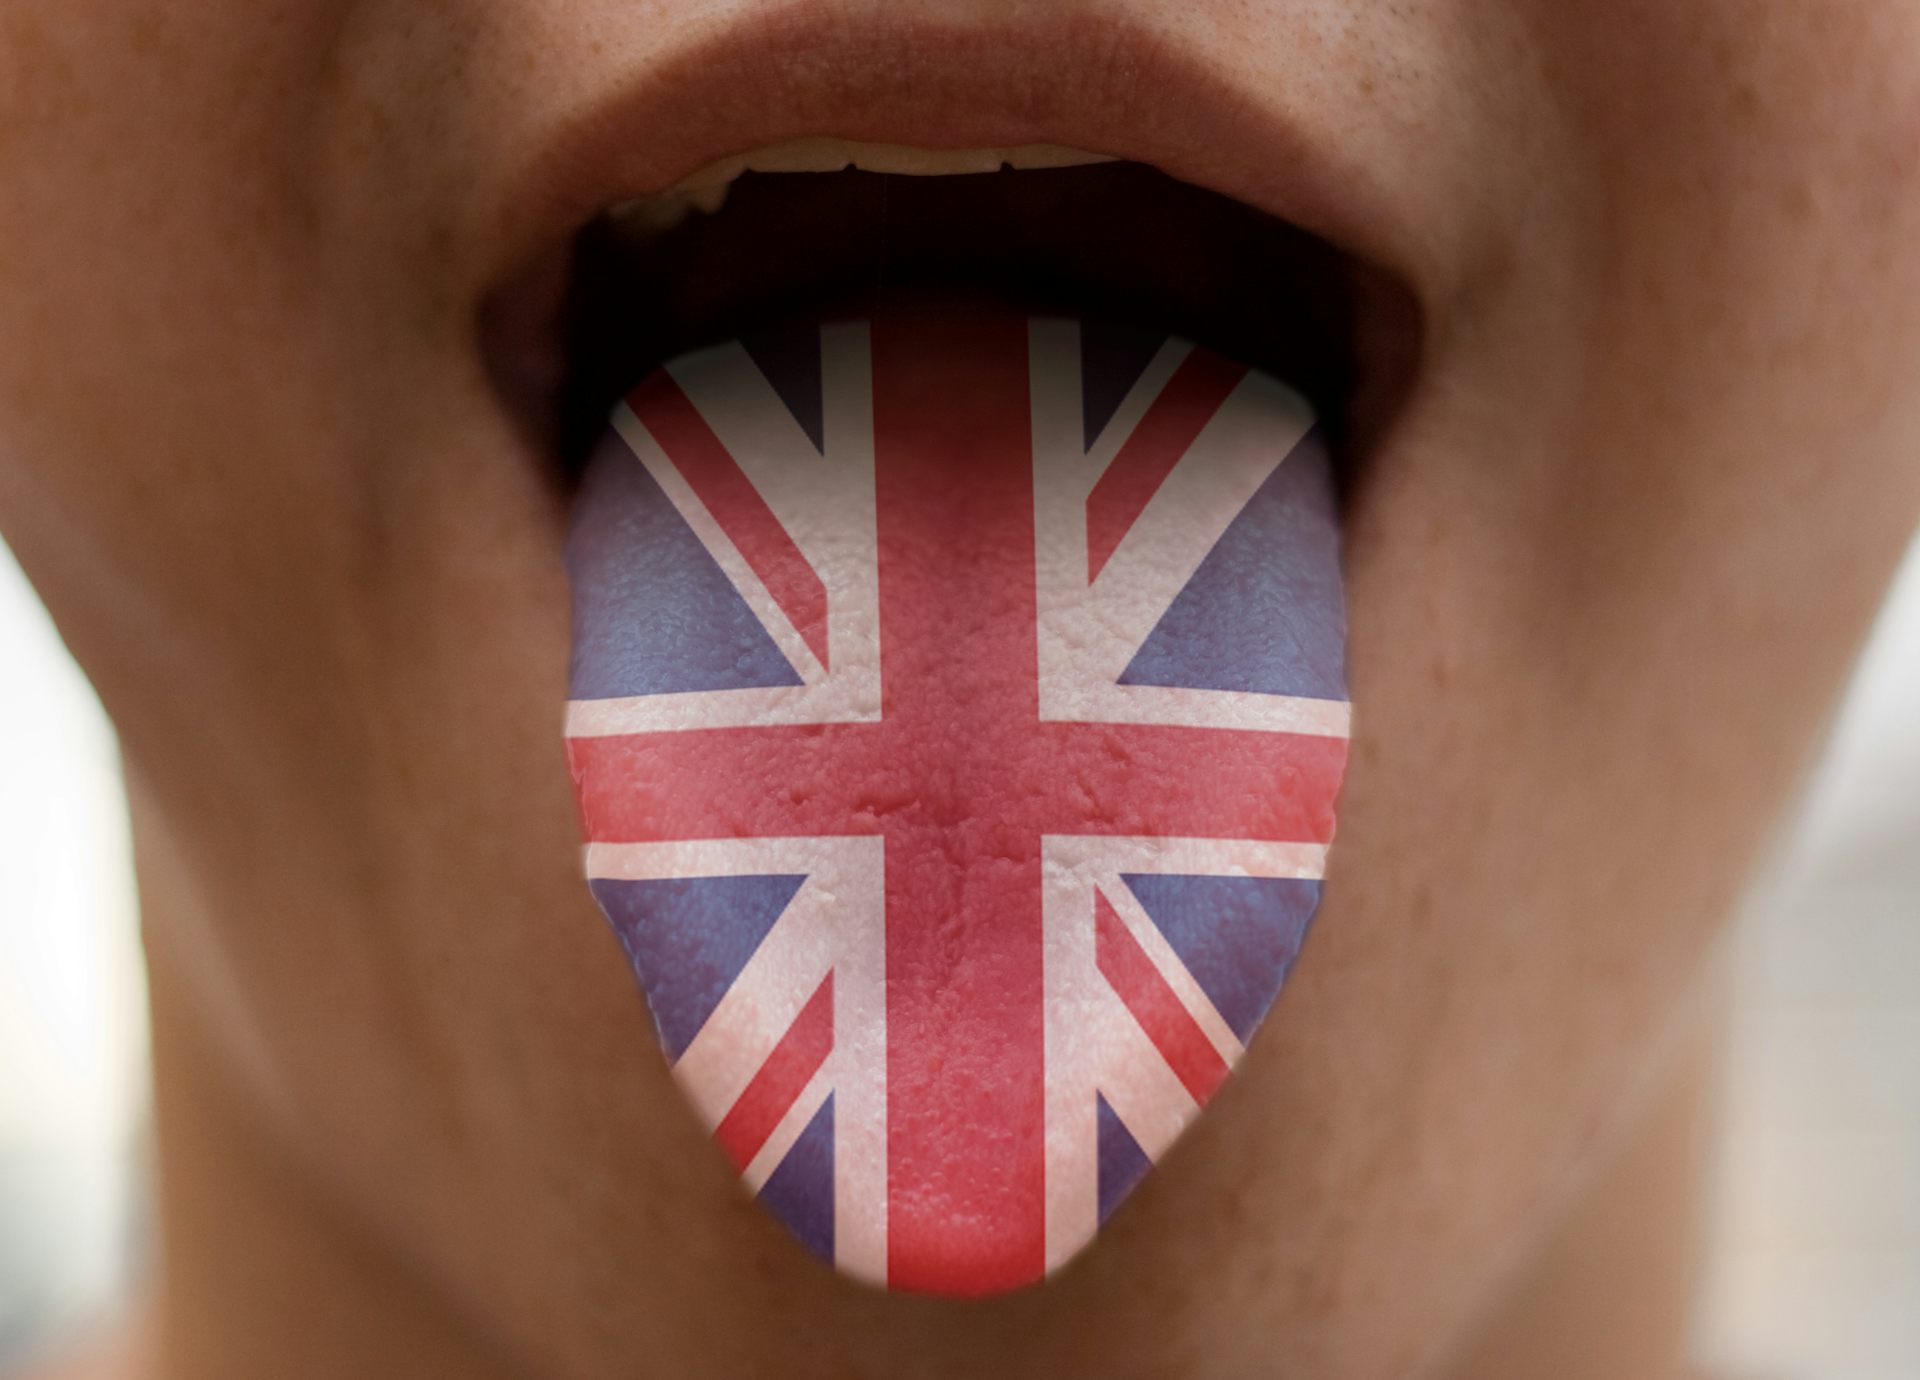 Ролик про английский. Государственный язык Великобритании. Великобританский язык. Язык с британским флагом. Британия английский язык.